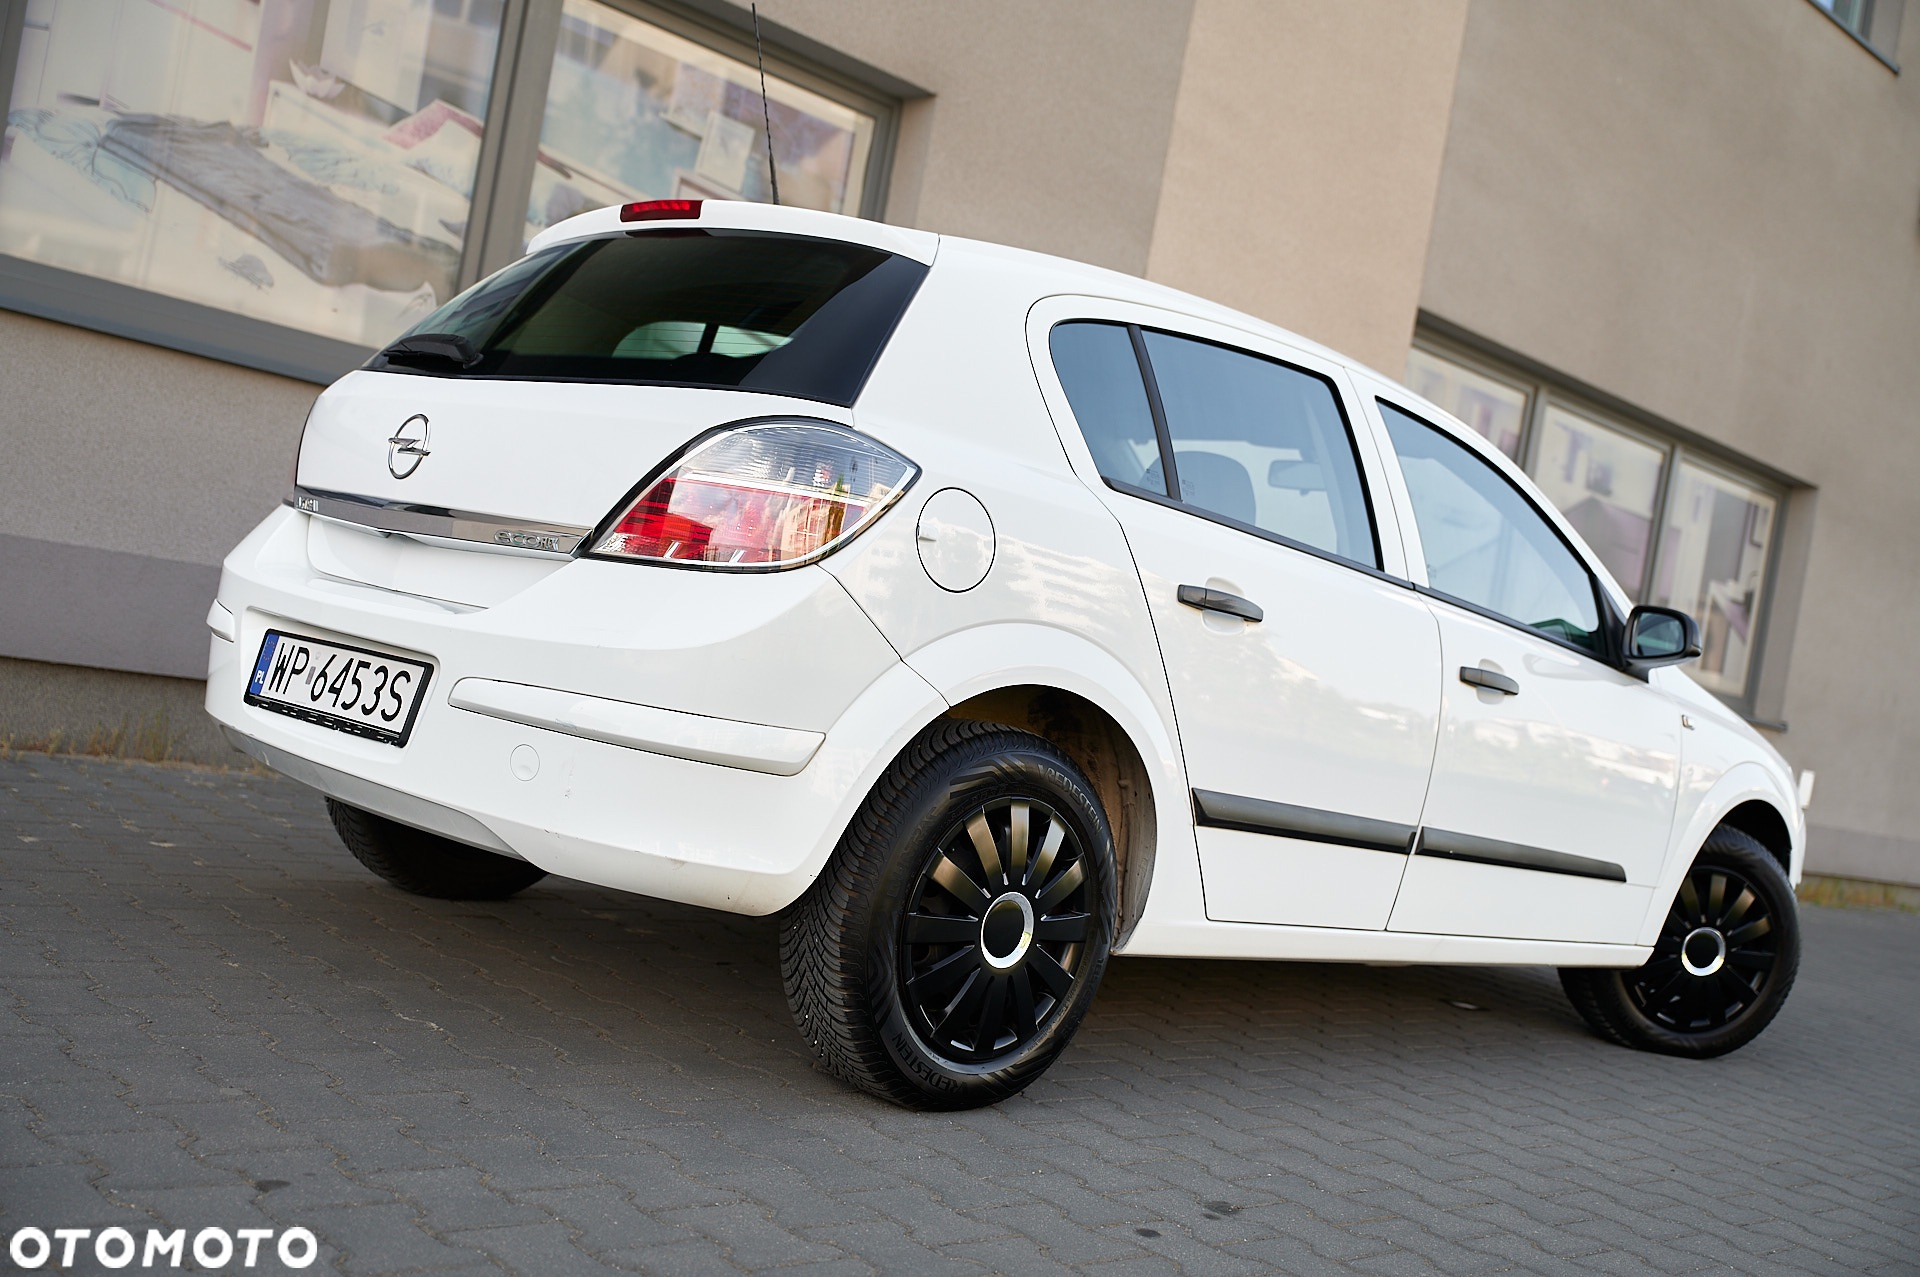 Opel Astra III 1.4 - 20